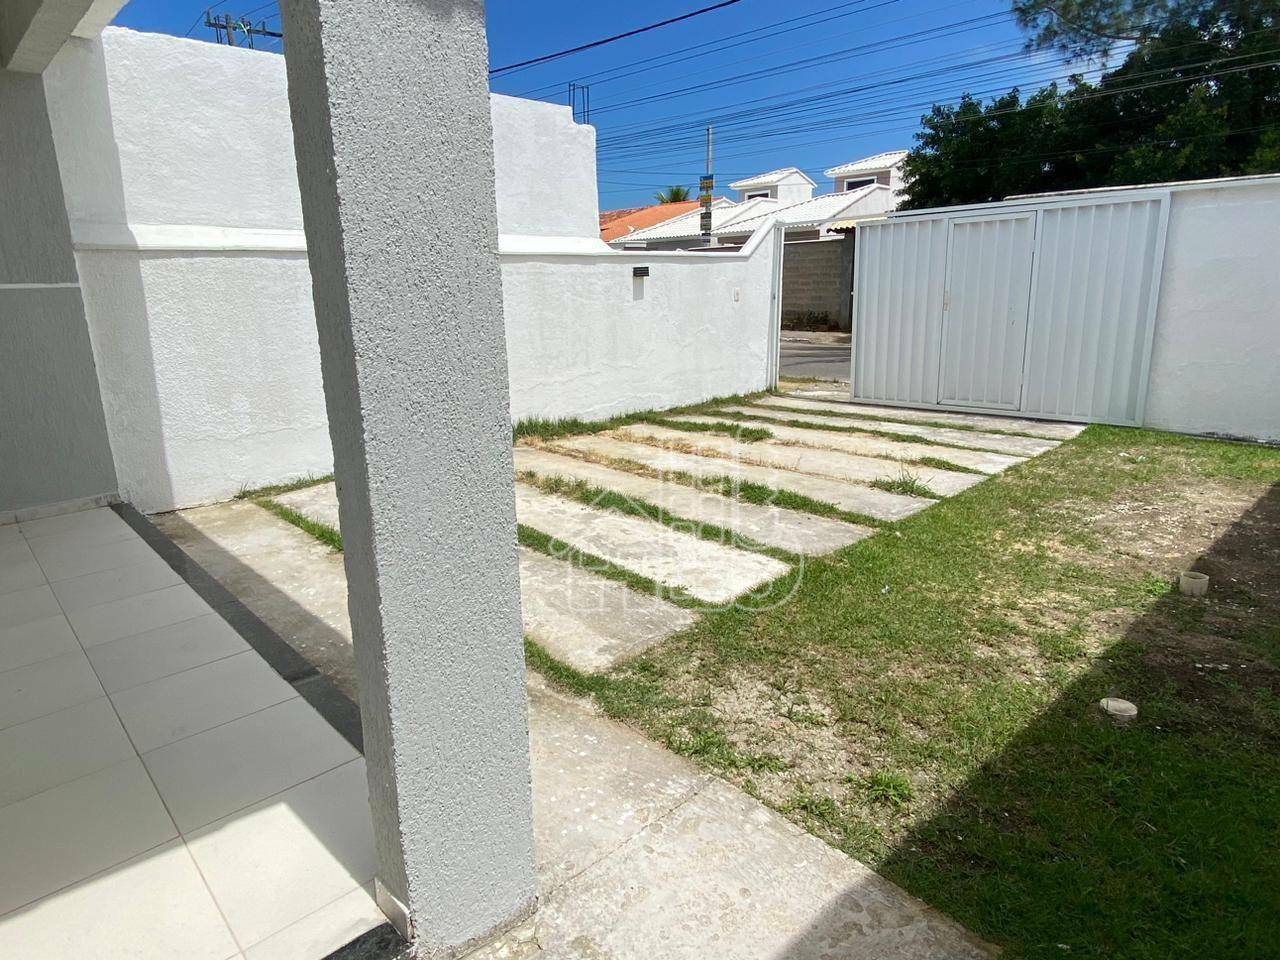 Casa com 2 dormitórios à venda, 70 m² por R$ 393.000,99 - Jardim Atlântico Central (Itaipuaçu) - Maricá/RJ